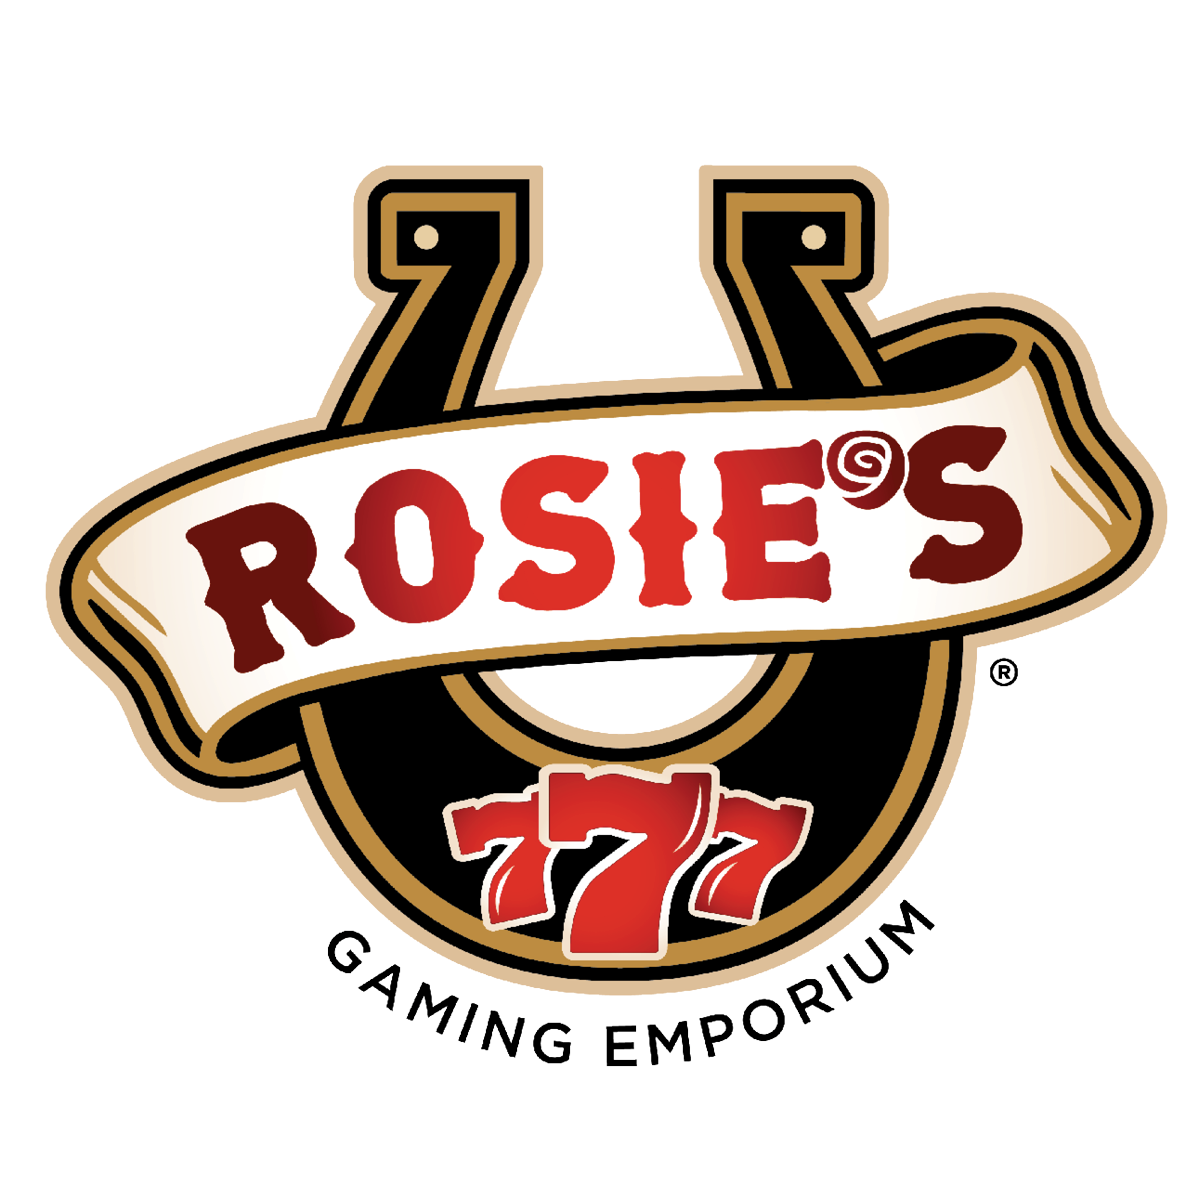 Rosie's Gaming Emporium - Vinton - Vinton, VA 24179 - (804)557-5480 | ShowMeLocal.com